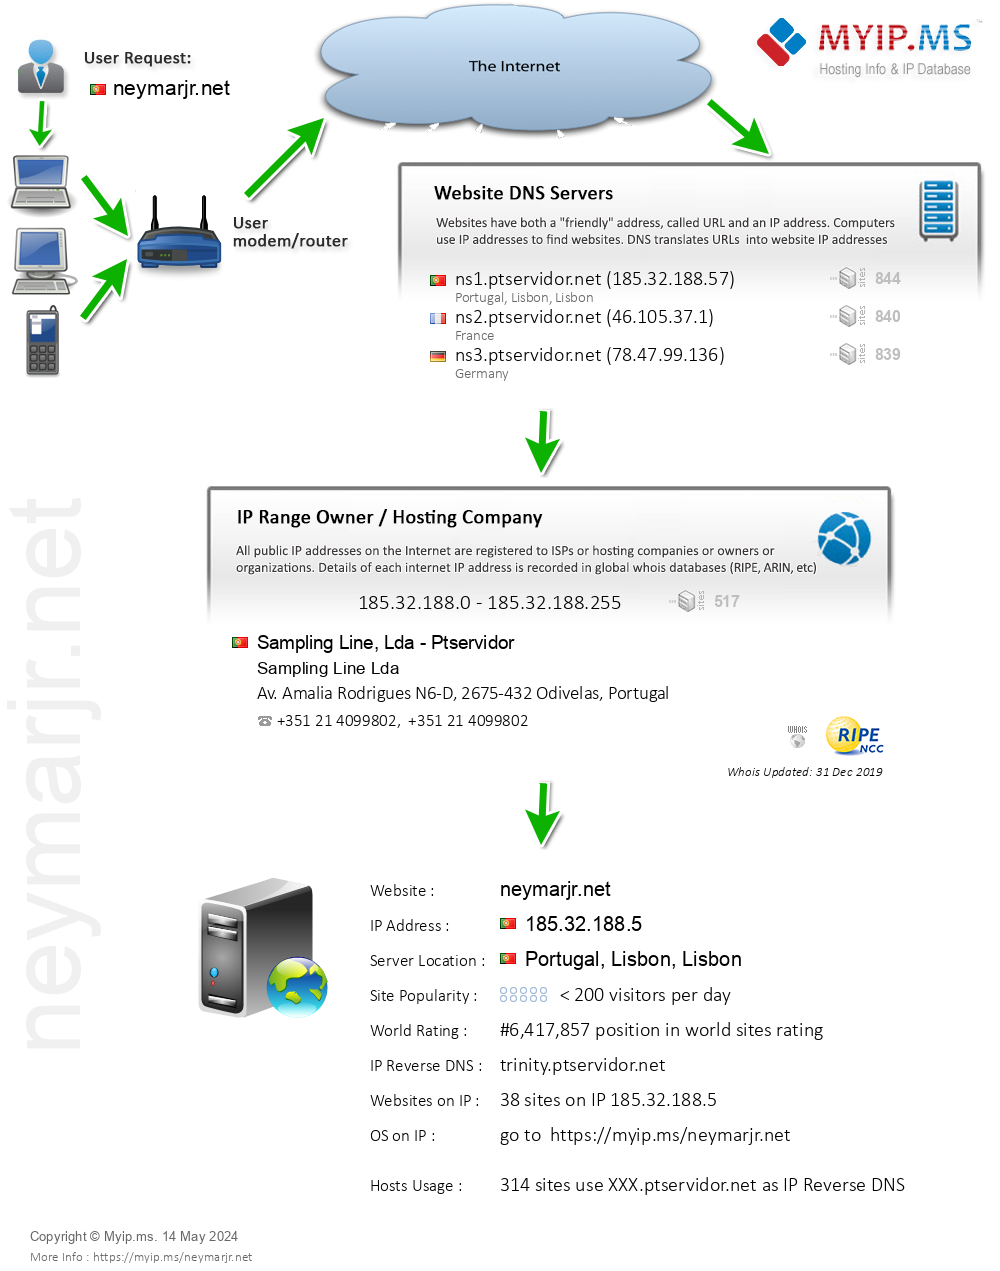 Neymarjr.net - Website Hosting Visual IP Diagram